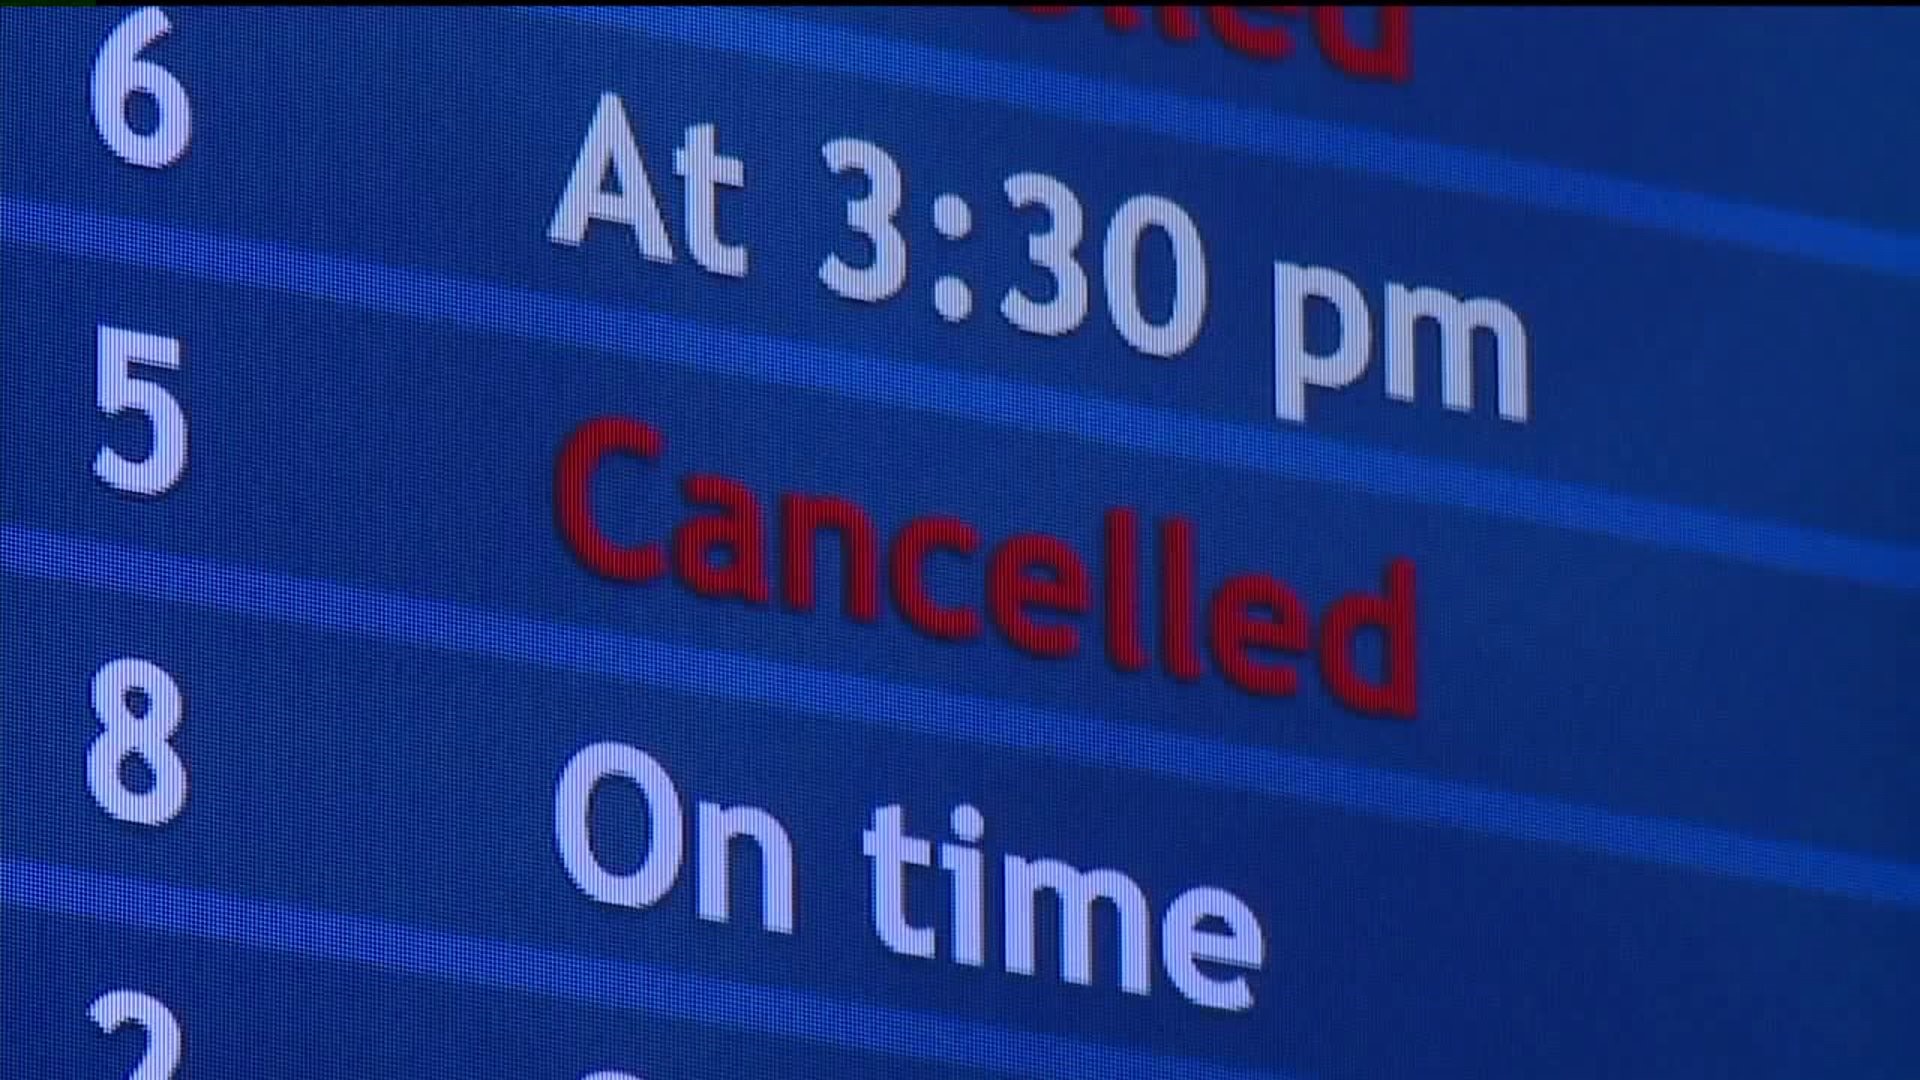 Weather Delays Flights into WB/Scranton International Airport